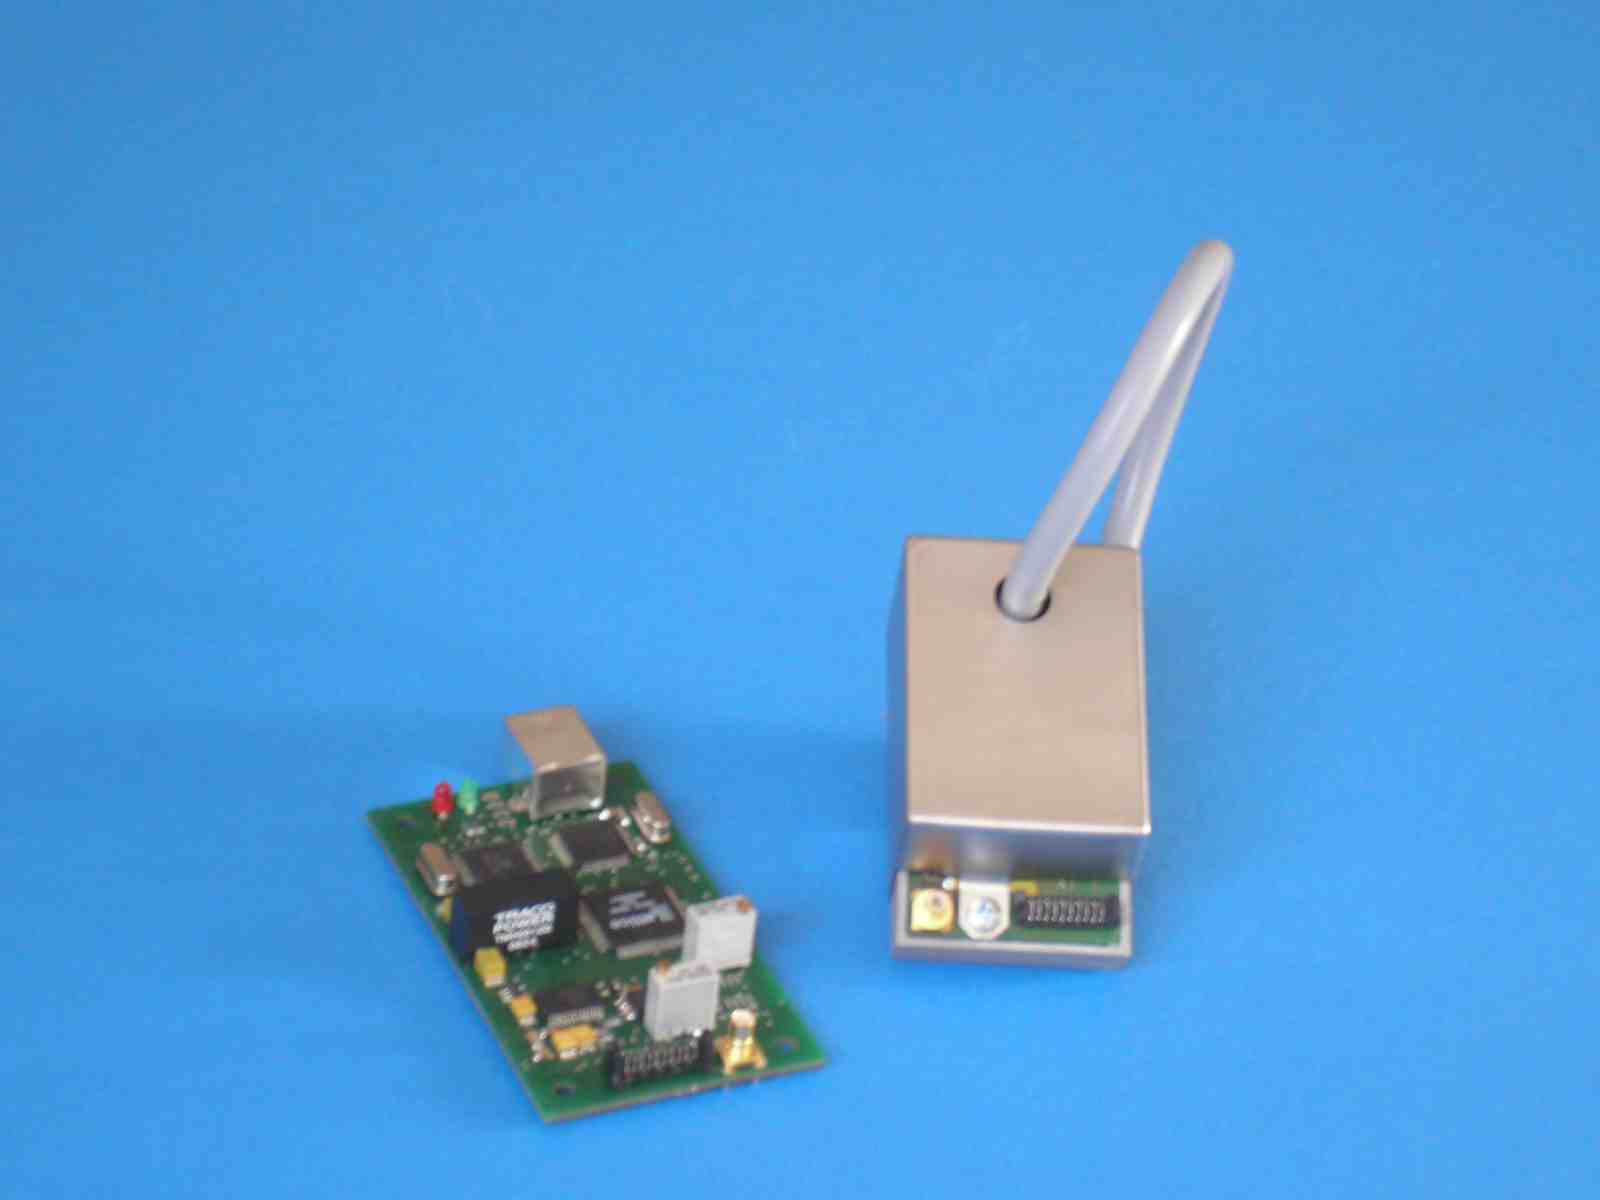 Zeiss MMS based mini spectrometer